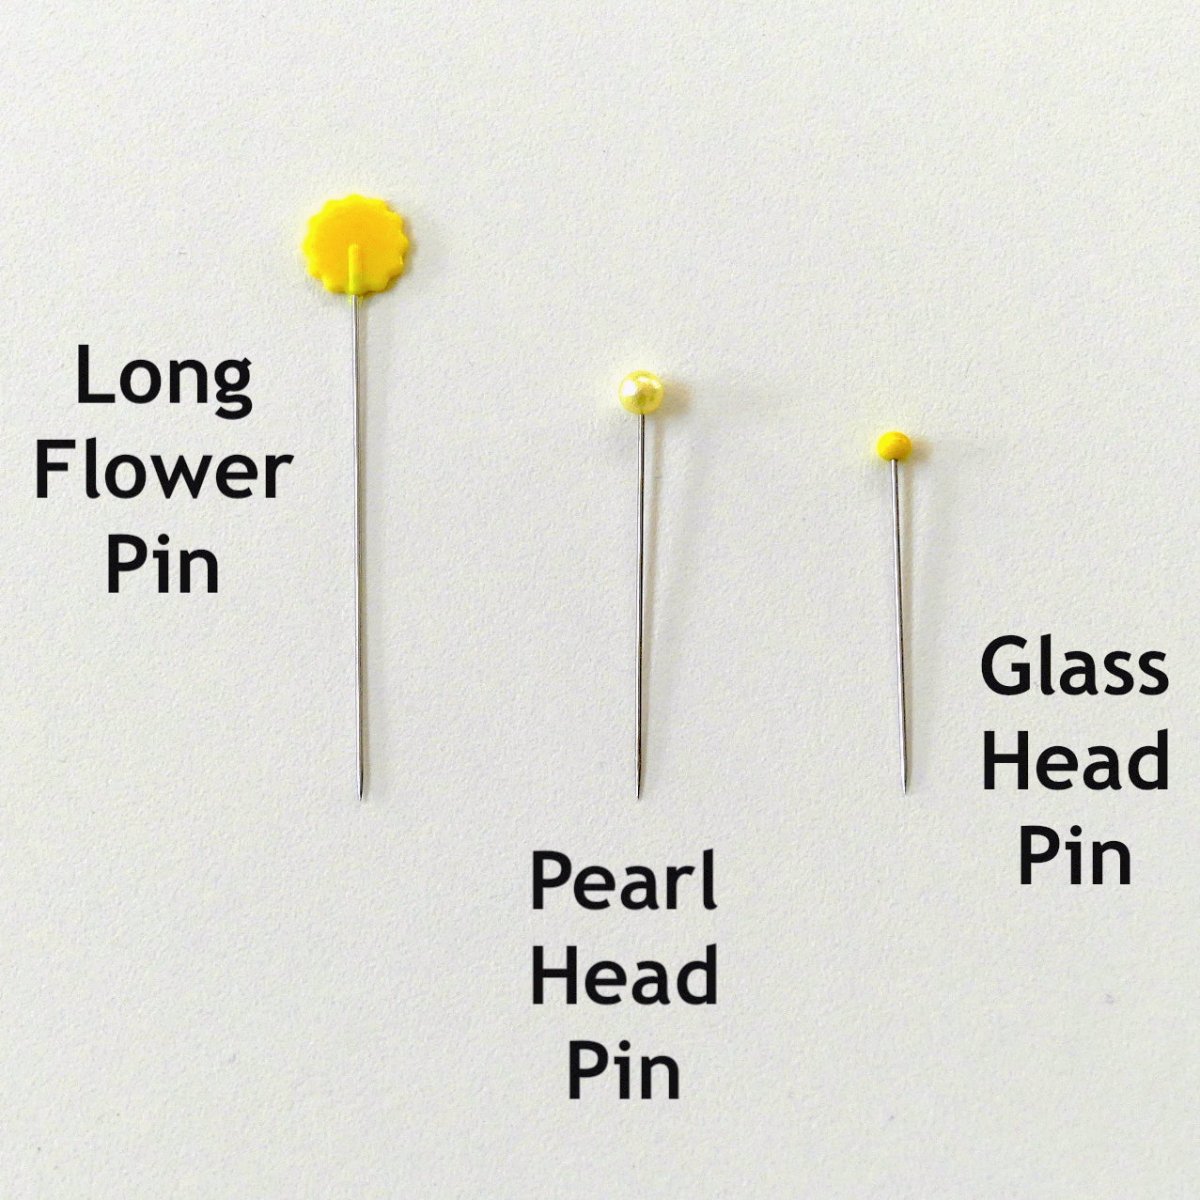 Dritz Flat Flower Head Pins, Assorted, 50 pc